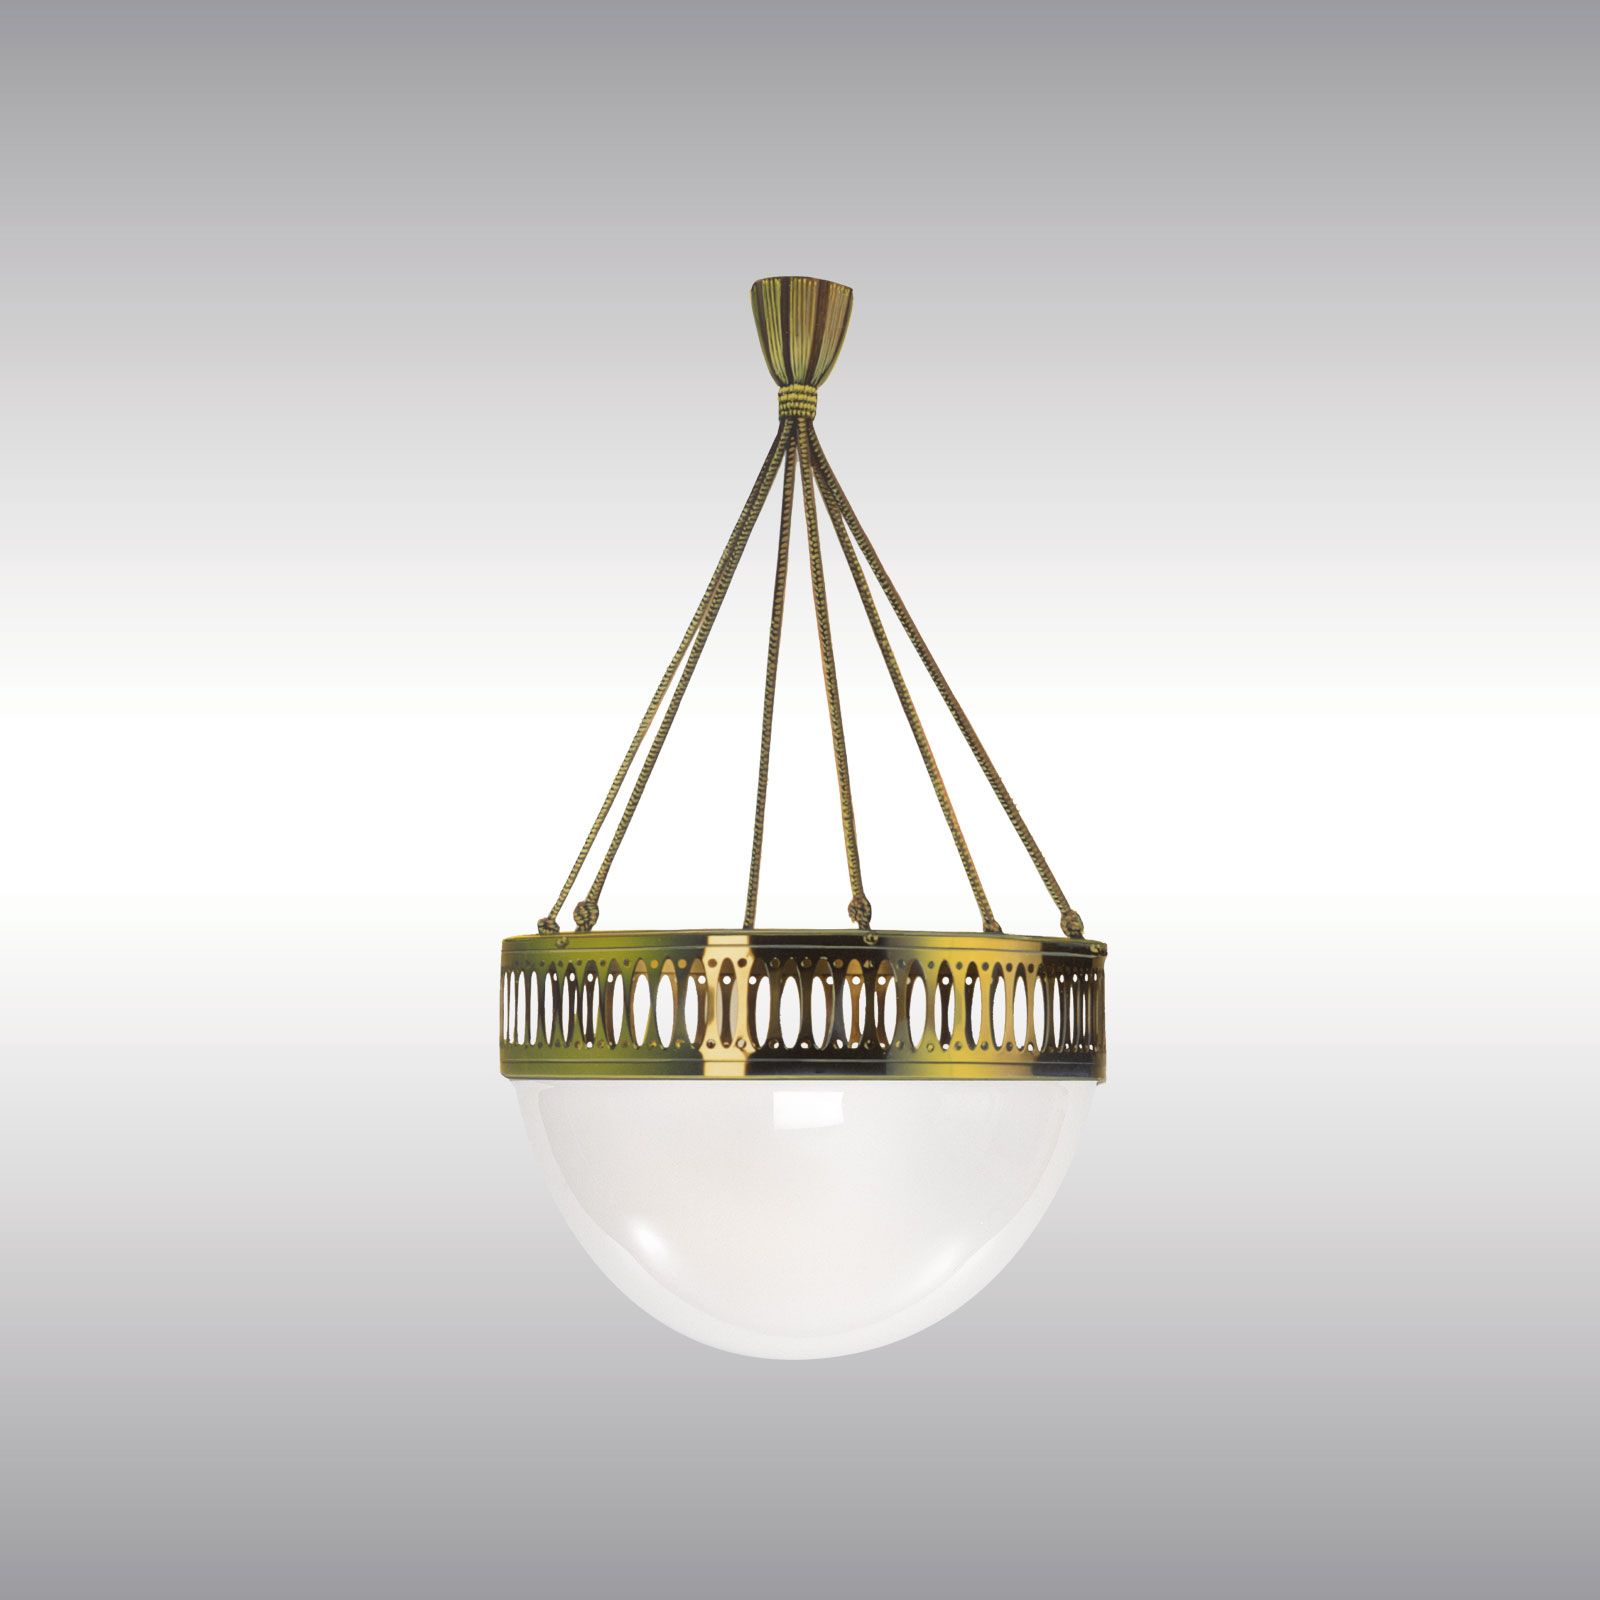 WOKA LAMPS VIENNA - OrderNr.: 9925|WW7/50PO - Design: Wiener Werkstaette